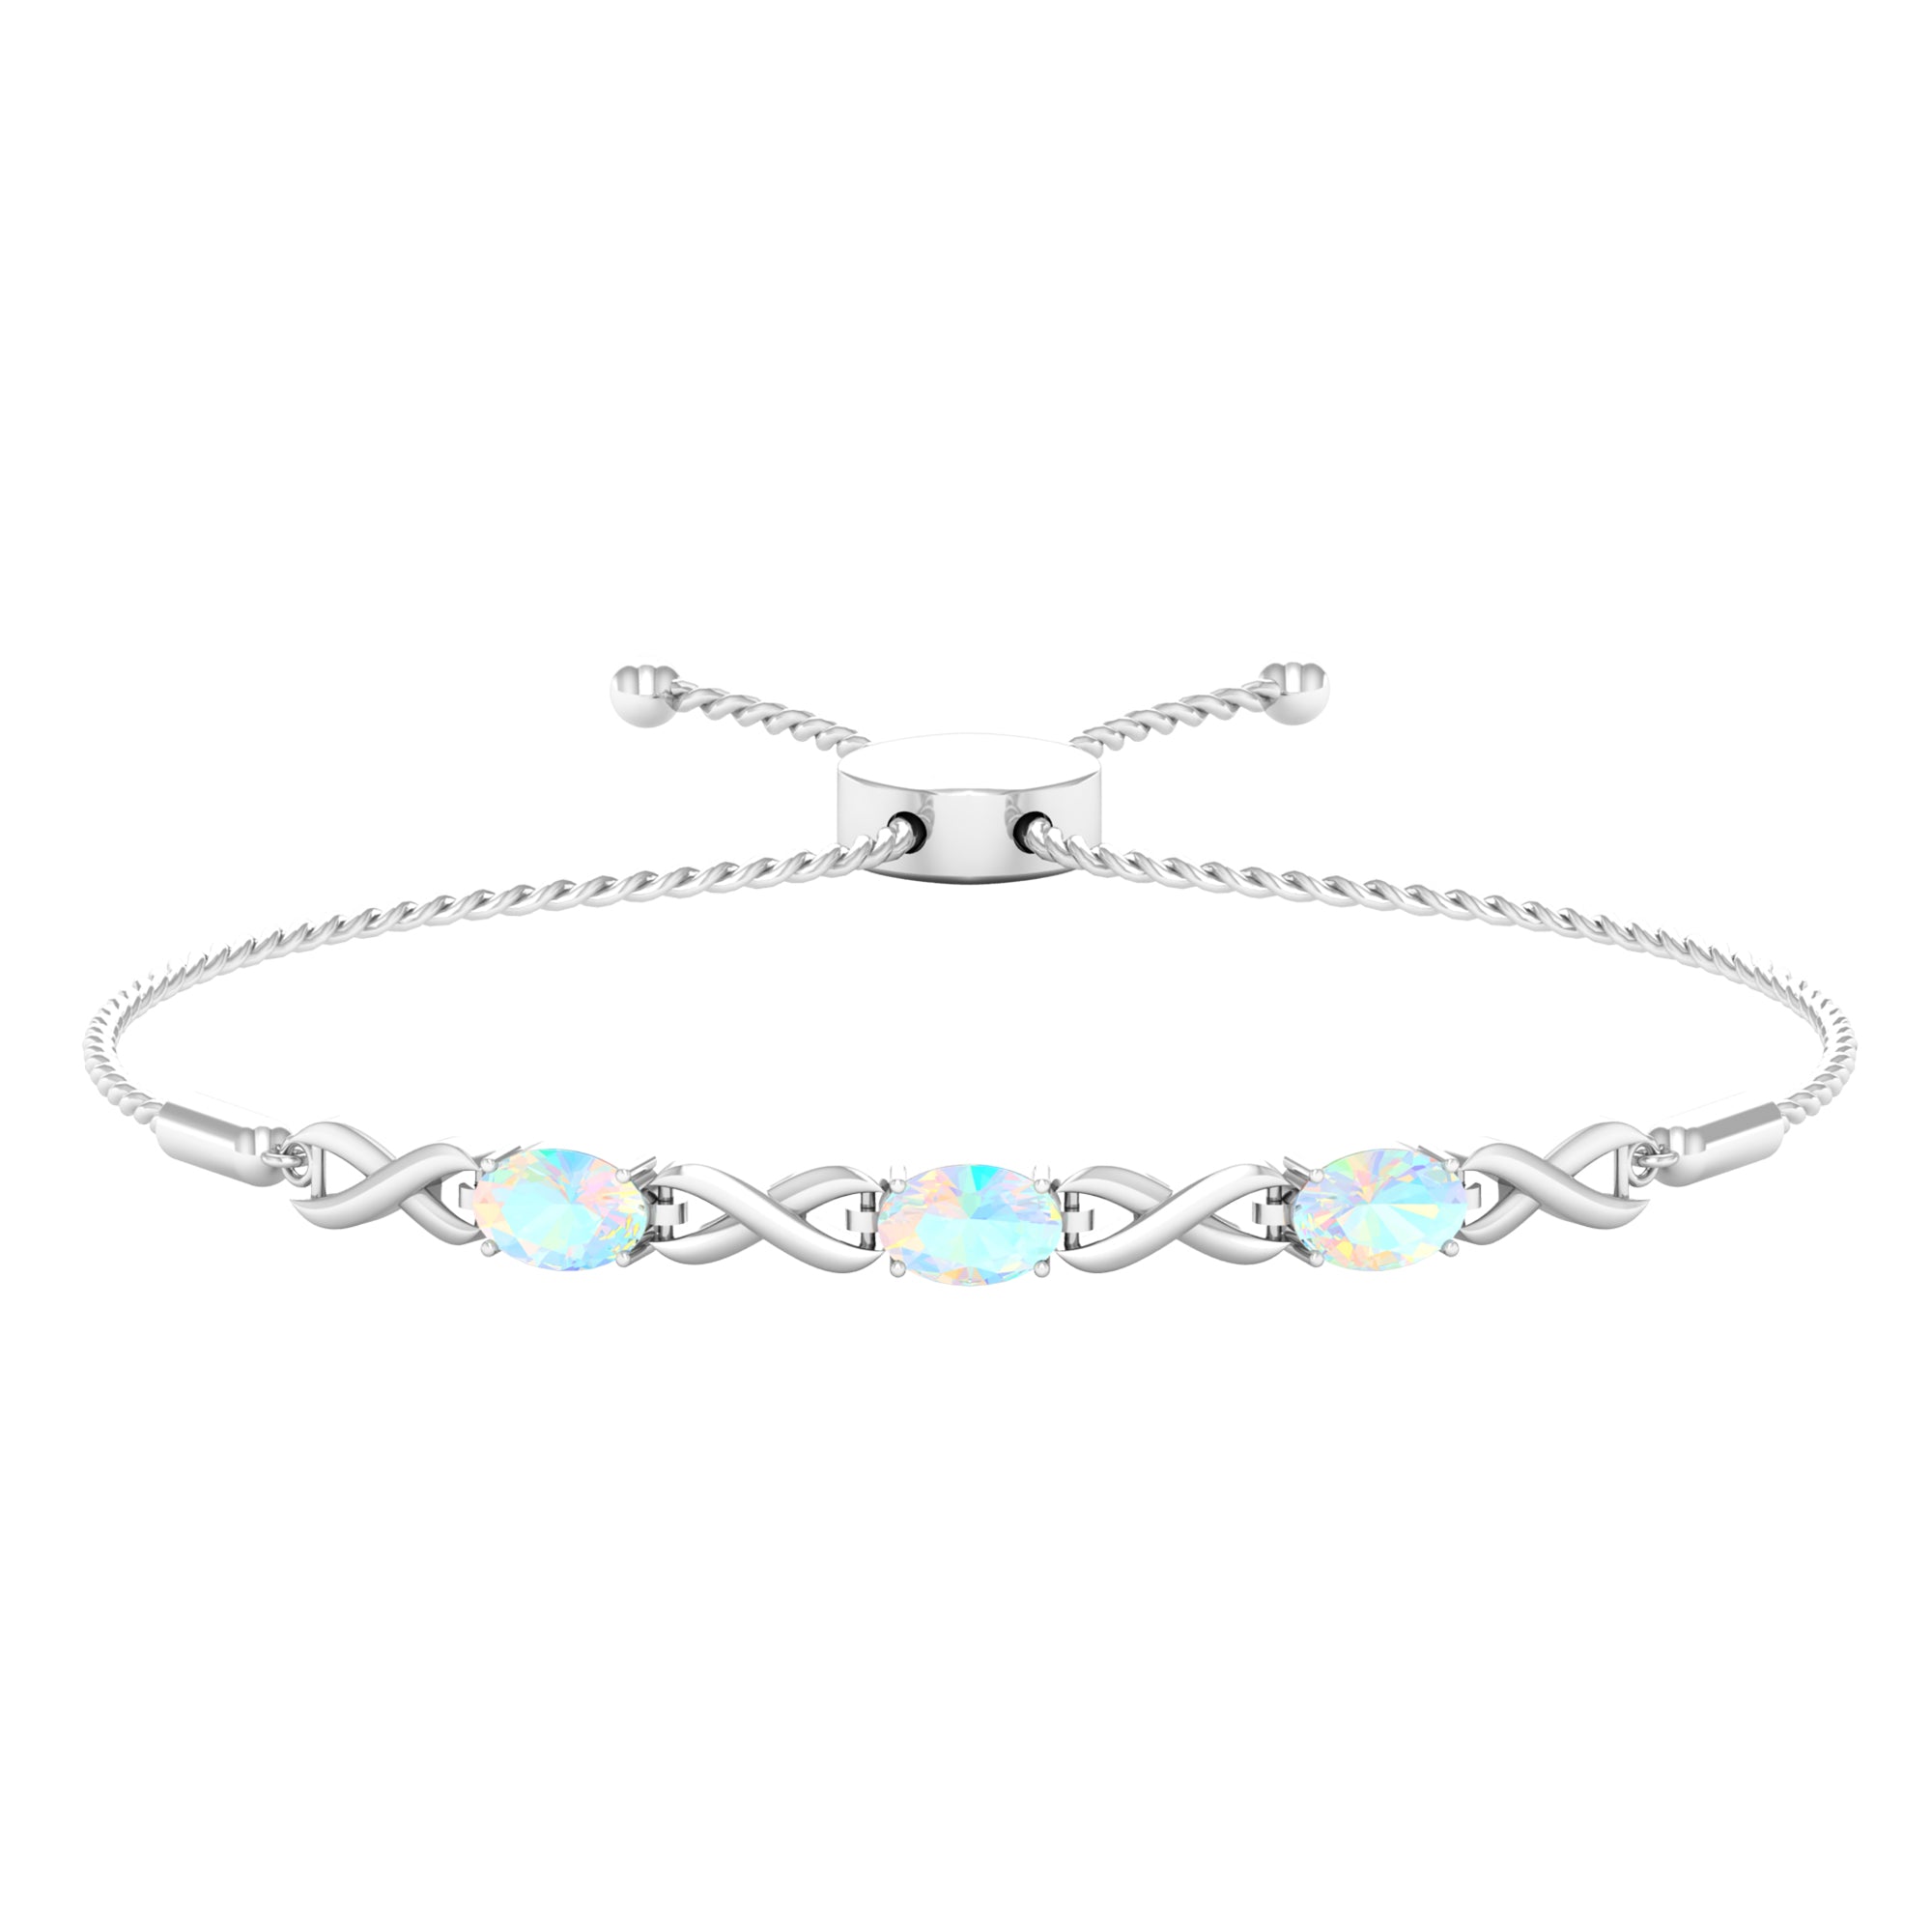 Rosec Jewels-Oval Cut Ethiopian Opal Infinity Link Bolo Bracelet